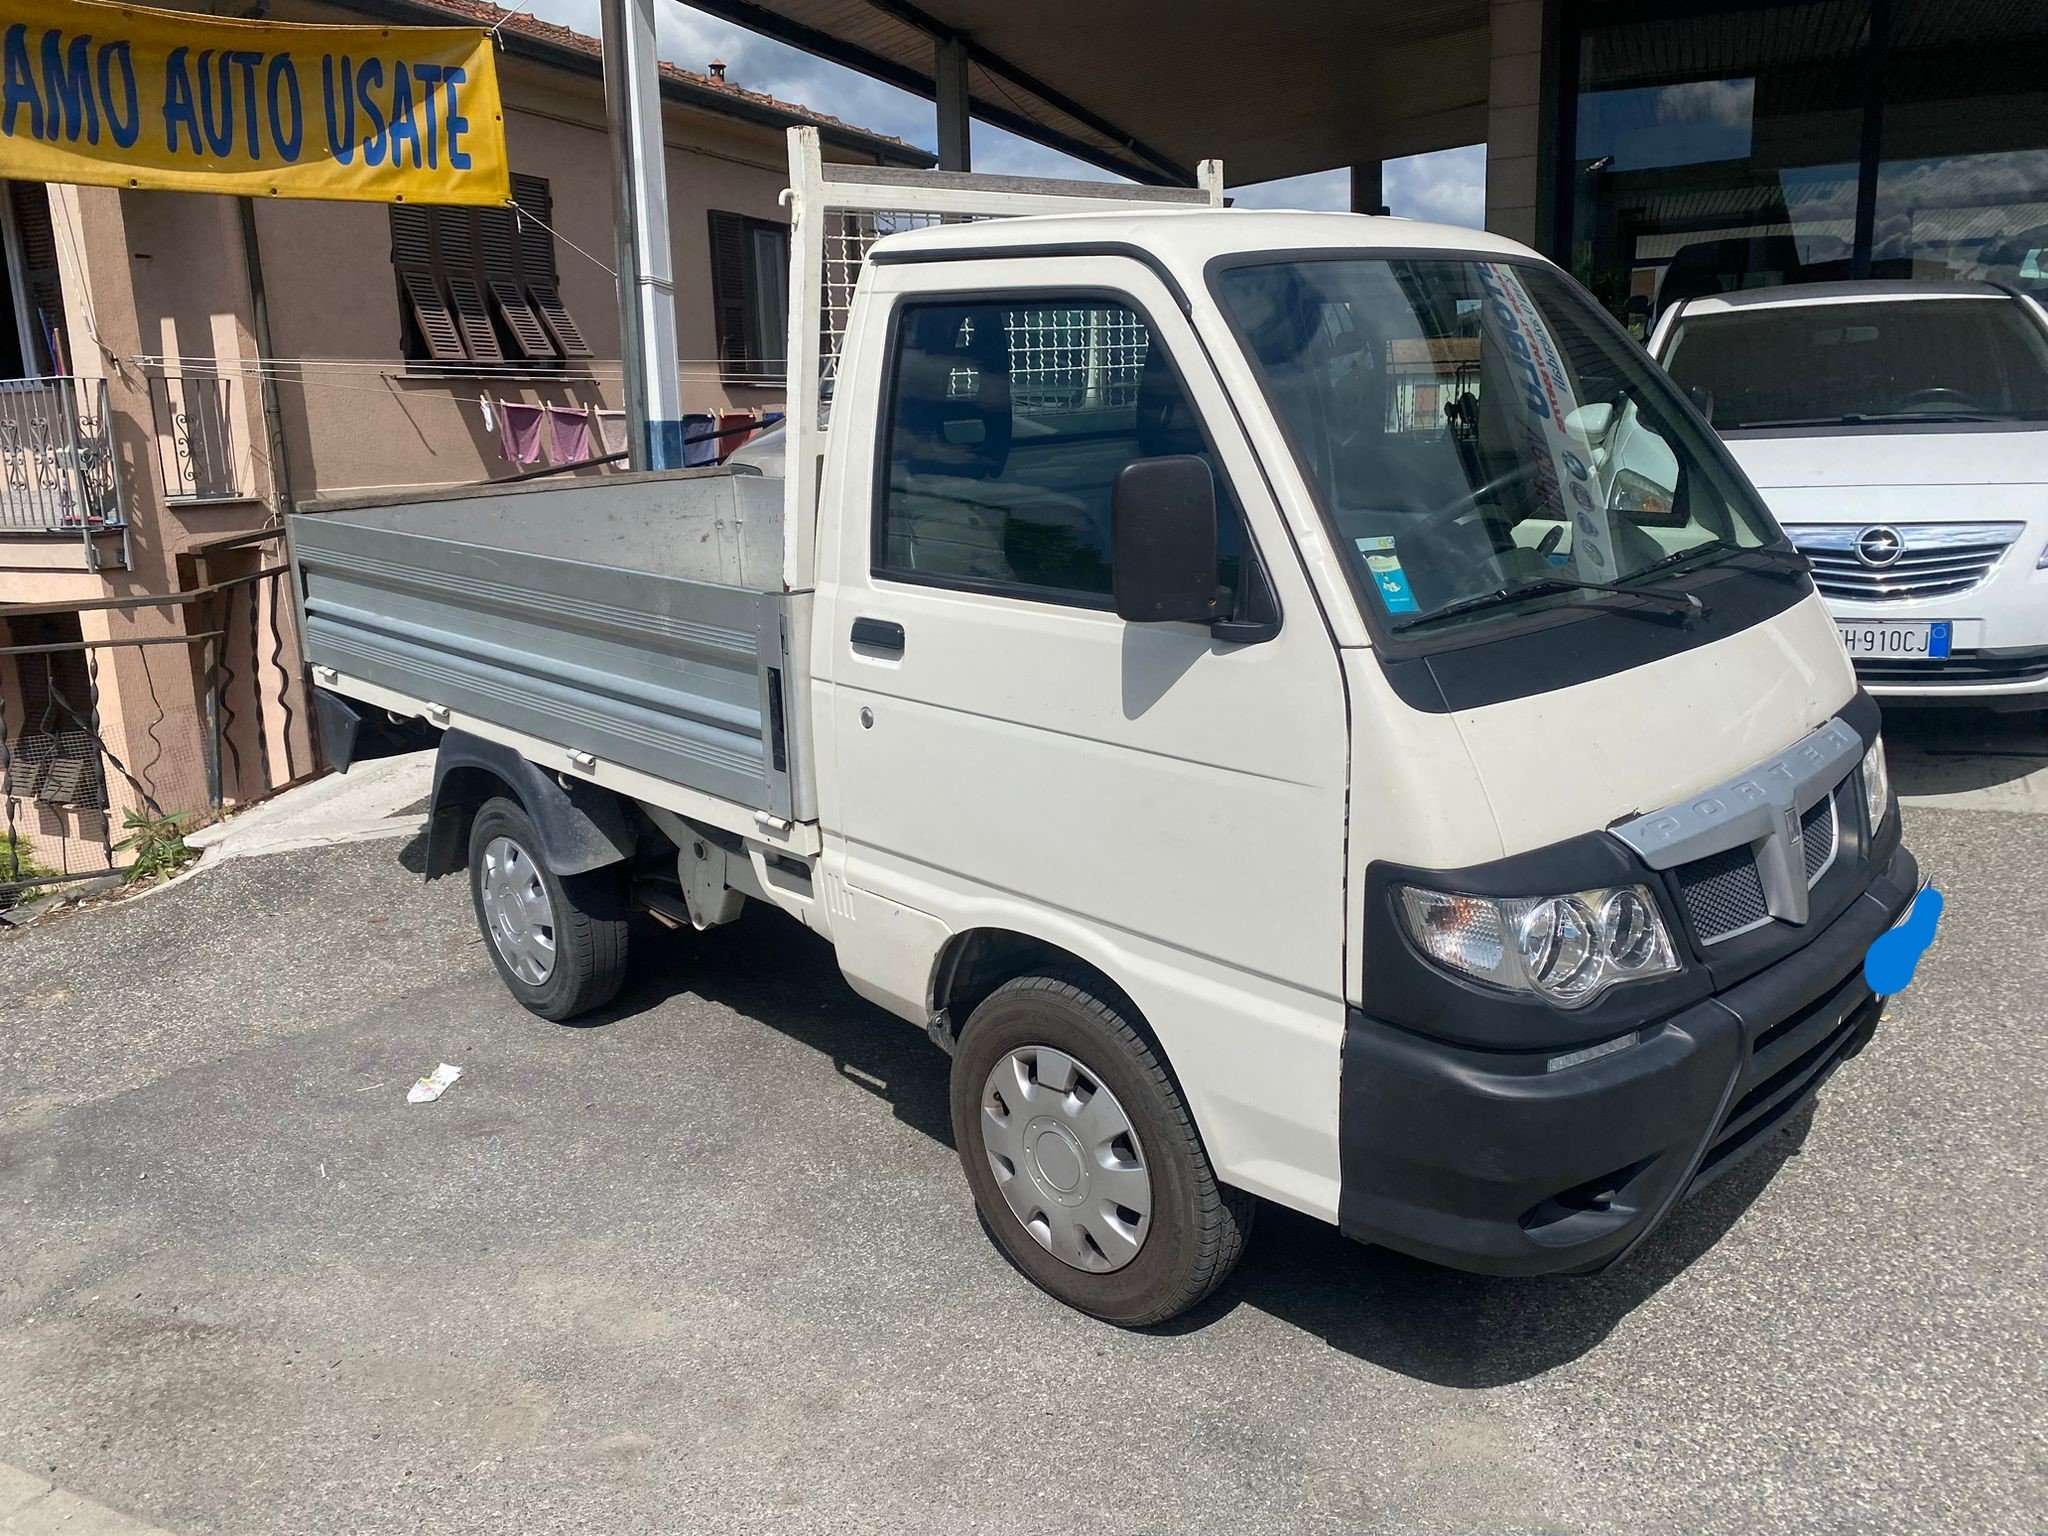 Piaggio Porter Transporter in White used in Ceparana - La Spezia for € 10,950.-